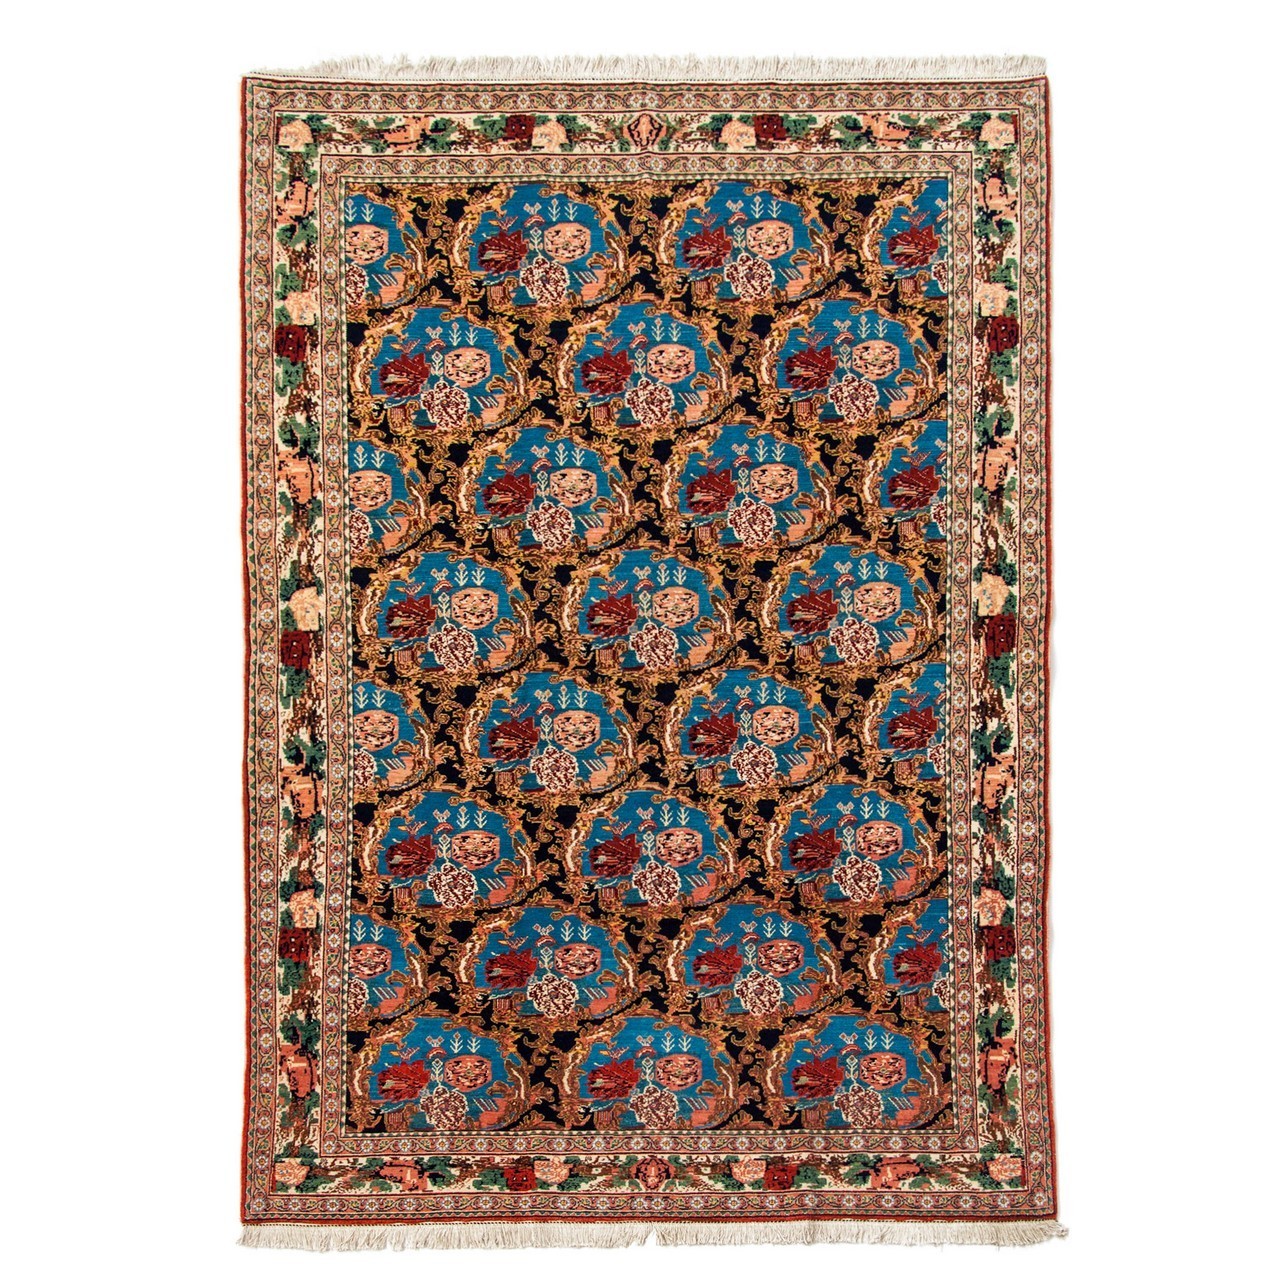 handgeknüpfter persischer Teppich. Ziffer 102101